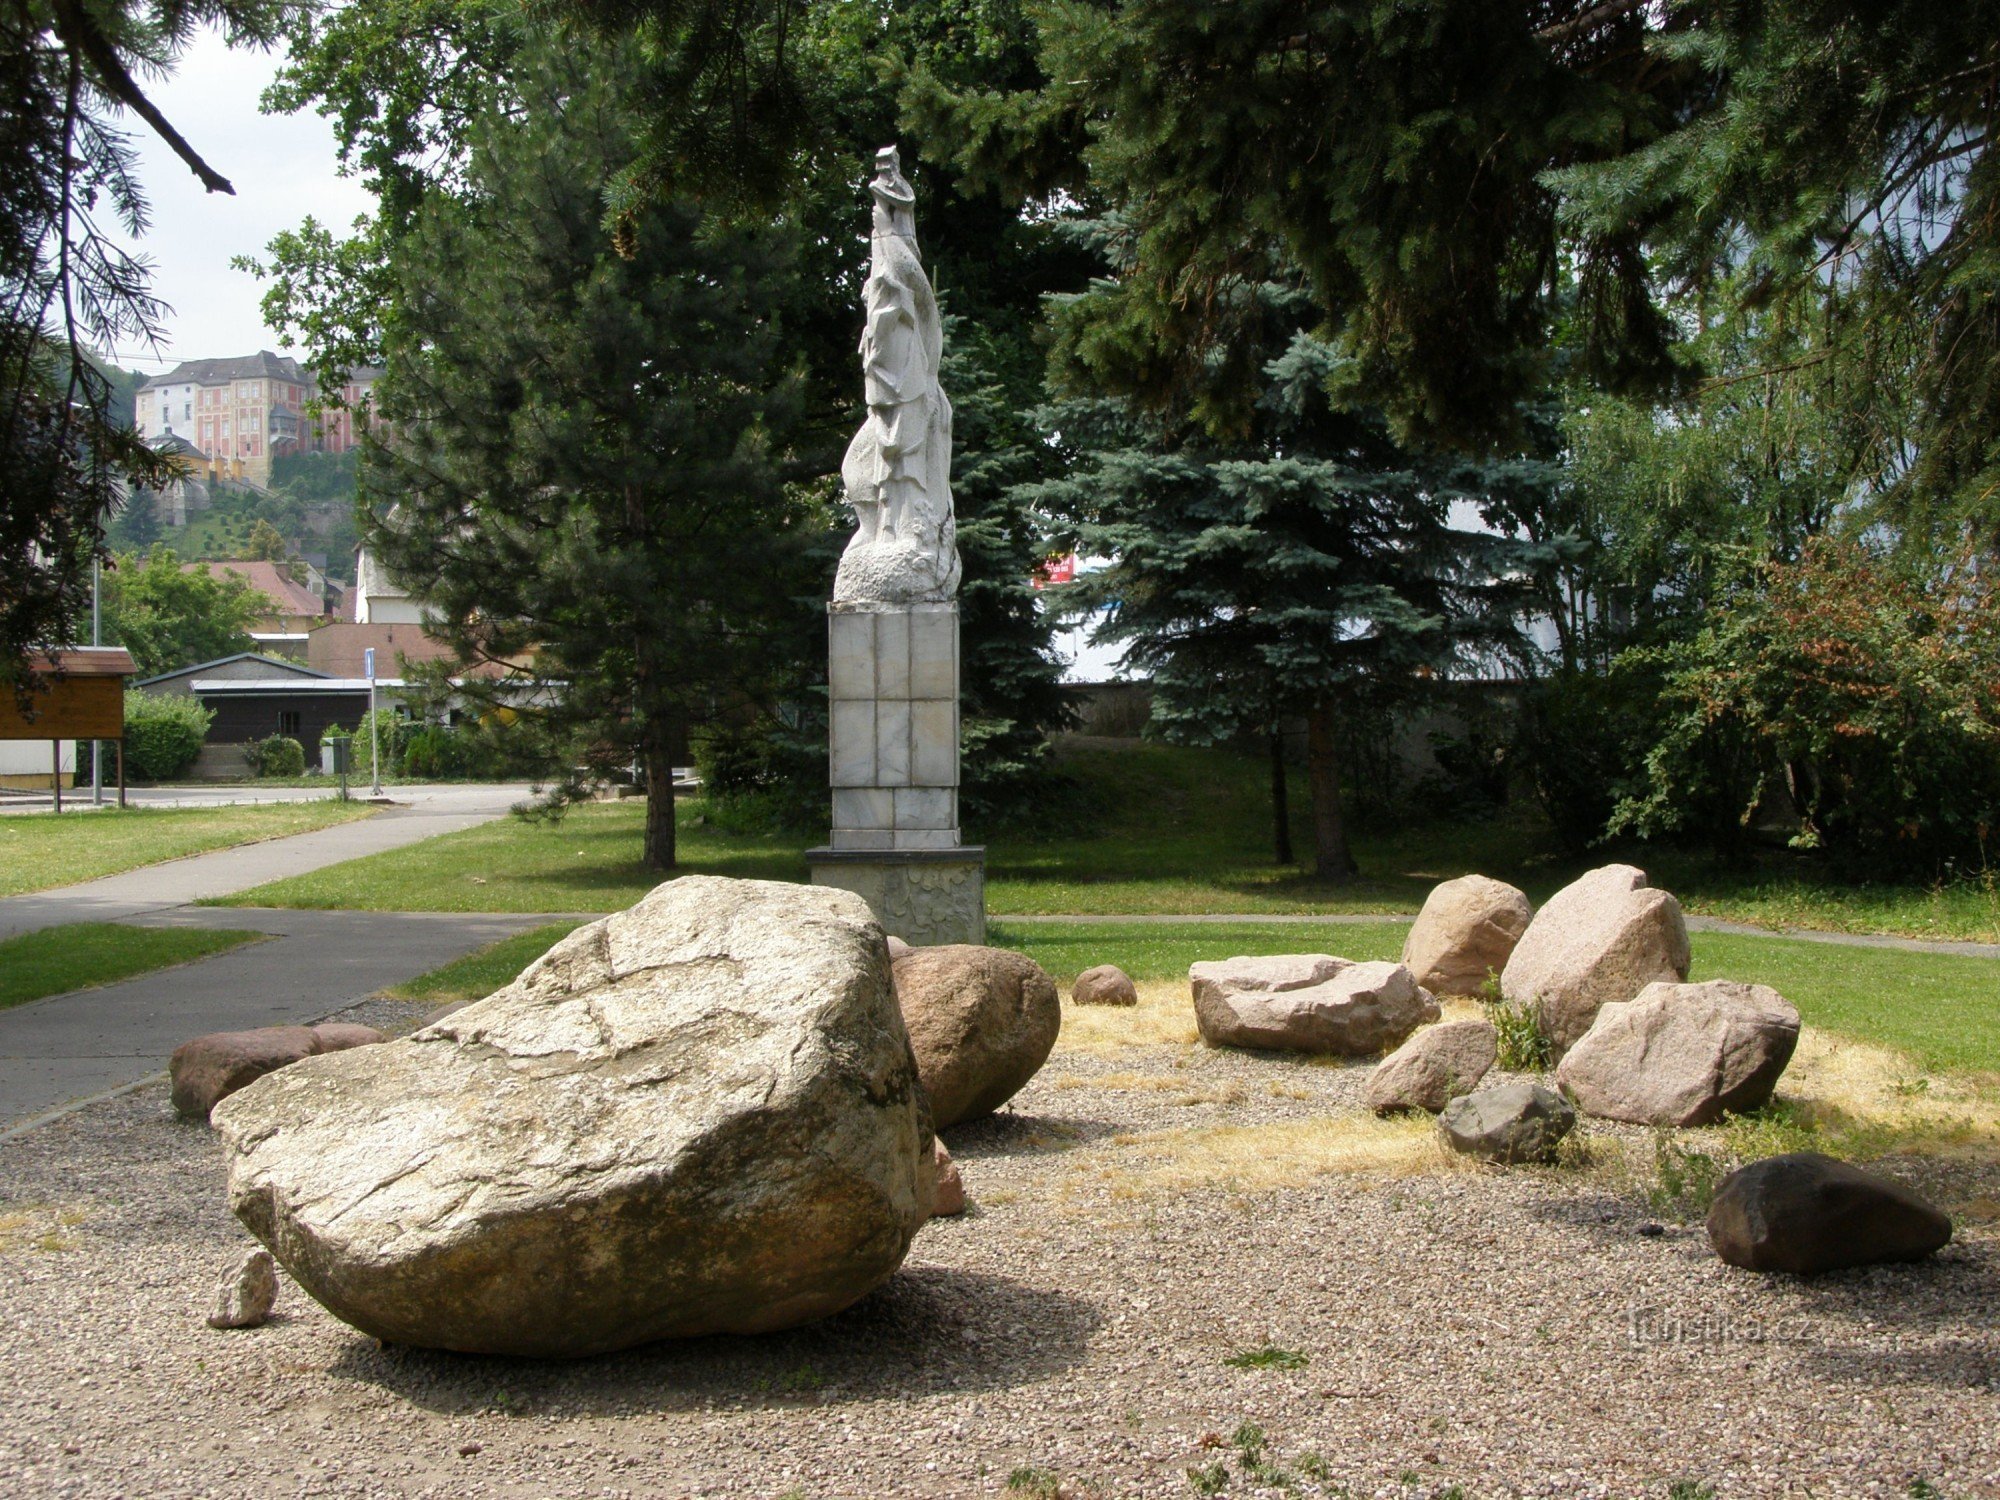 Javorník - Khu vườn của những tảng đá lởm chởm